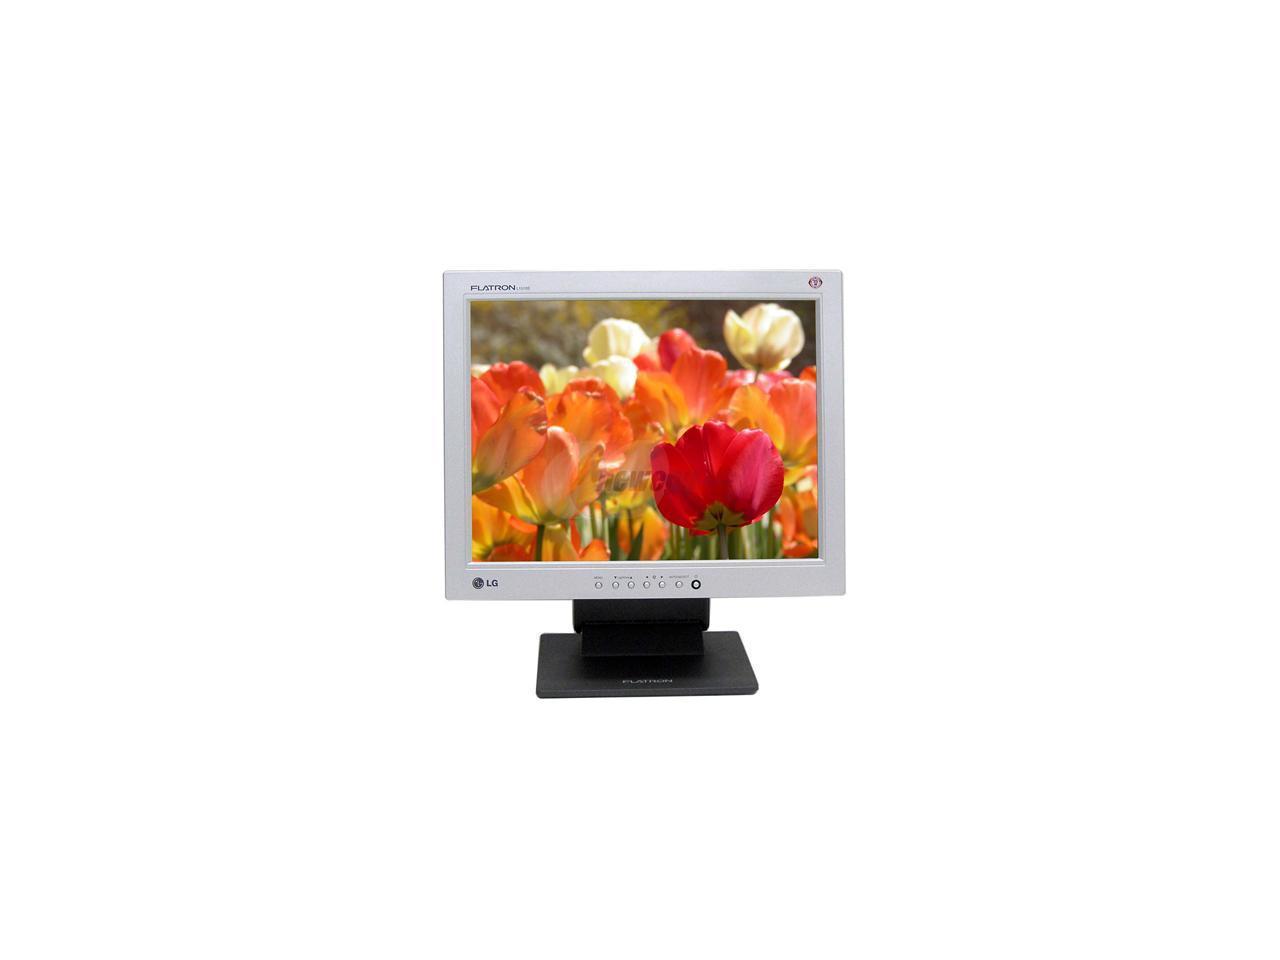 LG L1510S FLATRON 15" SVGA LCD Color Monitor